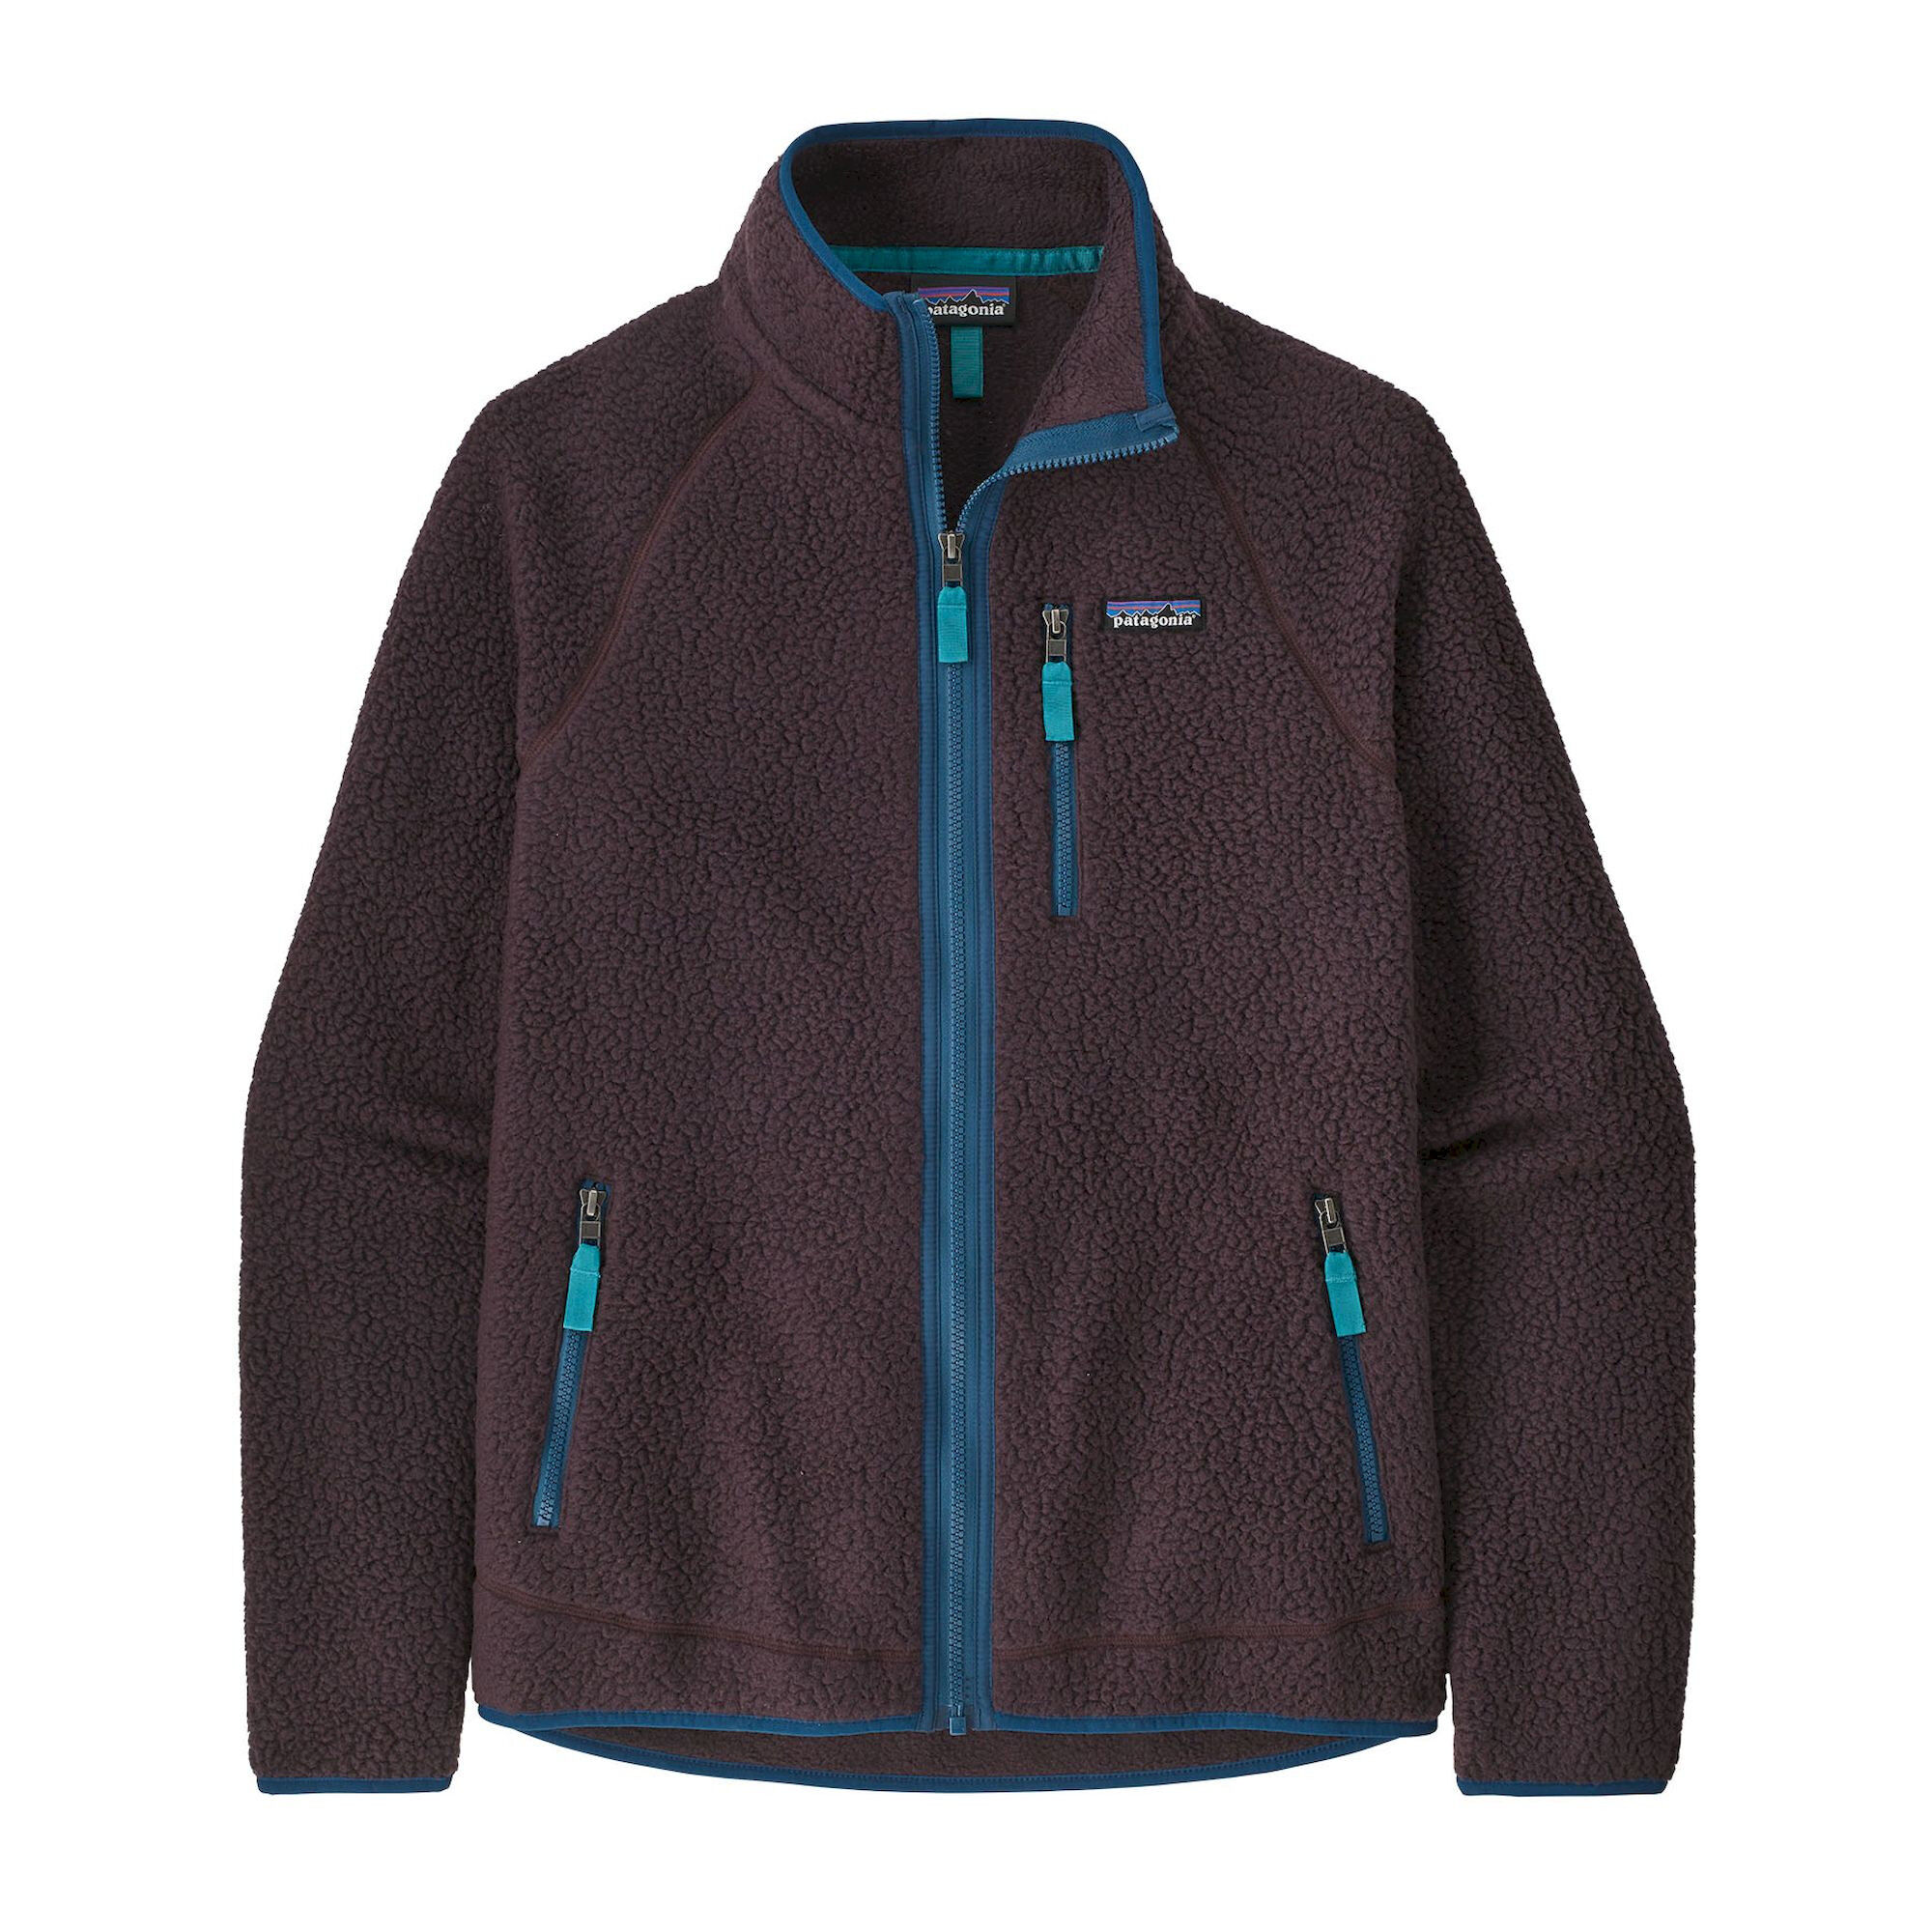 Patagonia Retro Pile Jkt - Fleece jacket - Men's